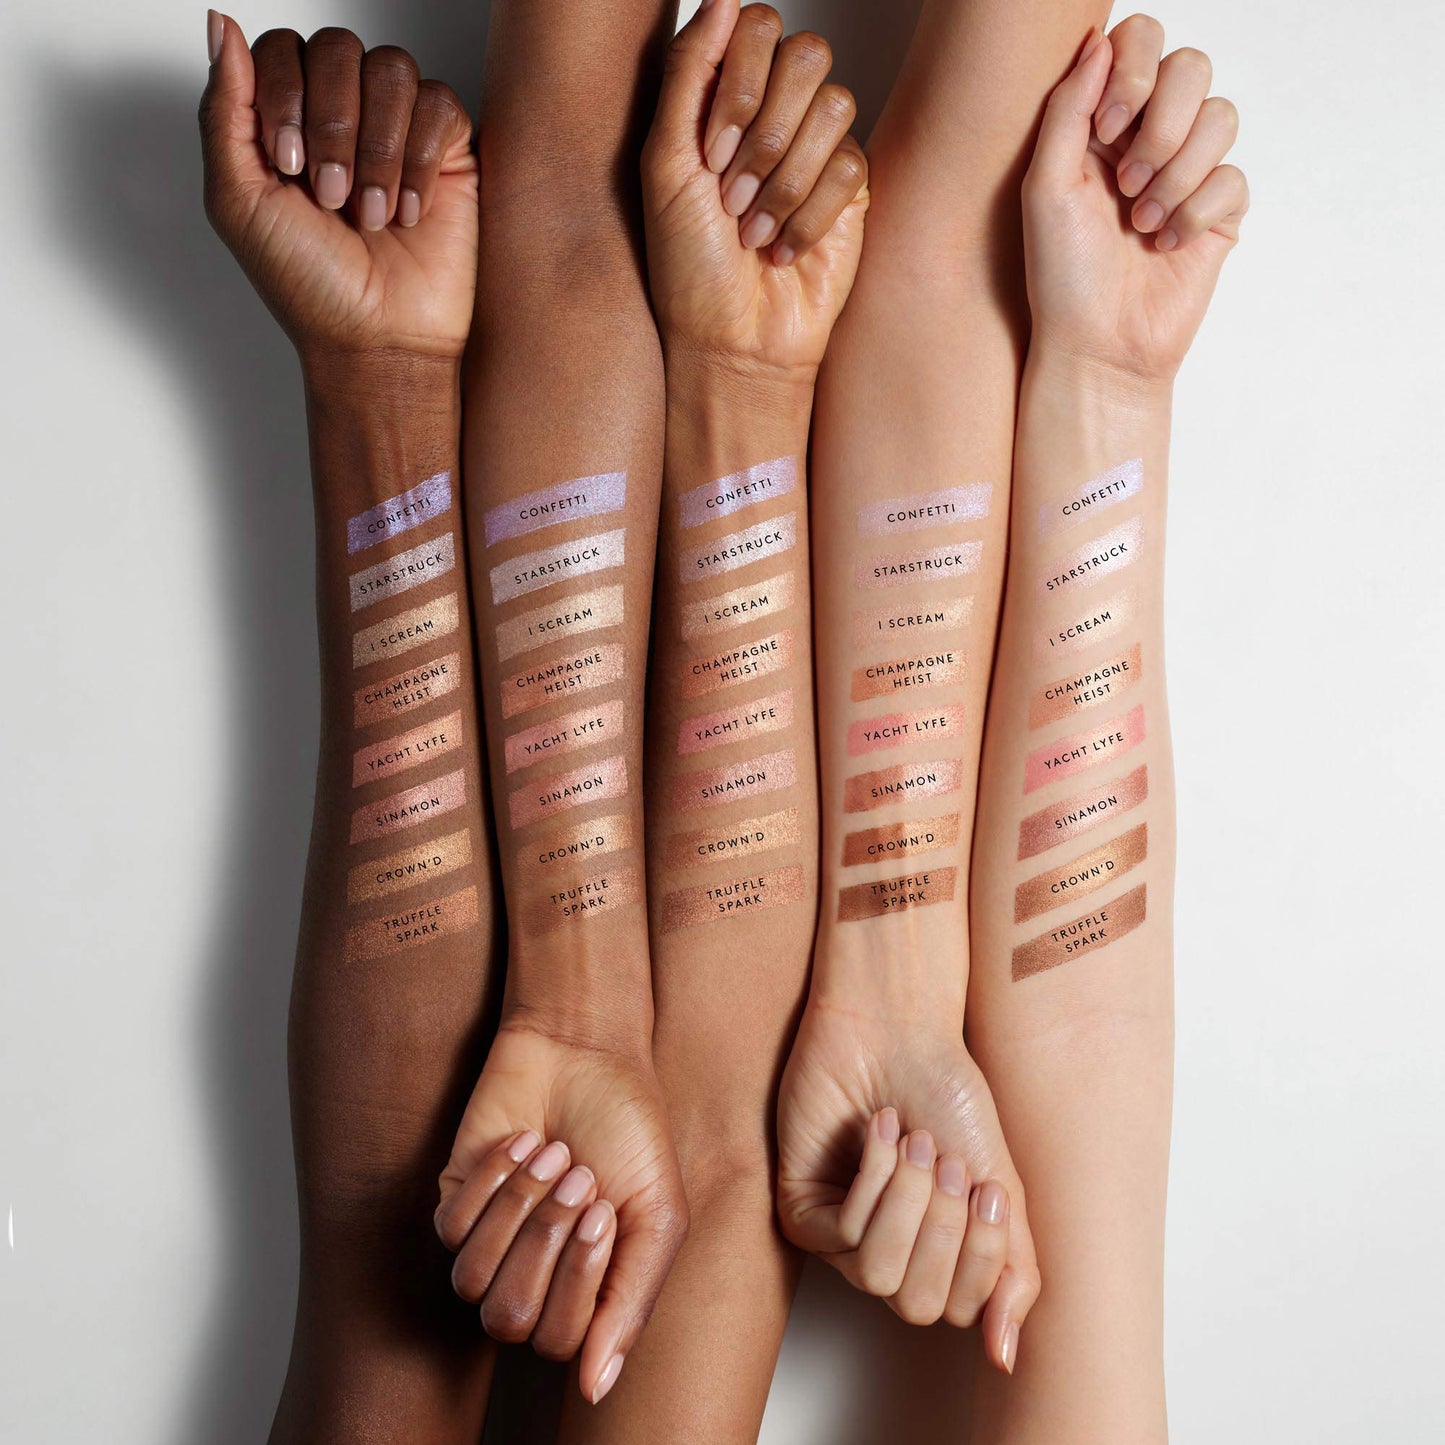 Fenty Beauty by Rihanna Match Stix Shimmer Skinstick